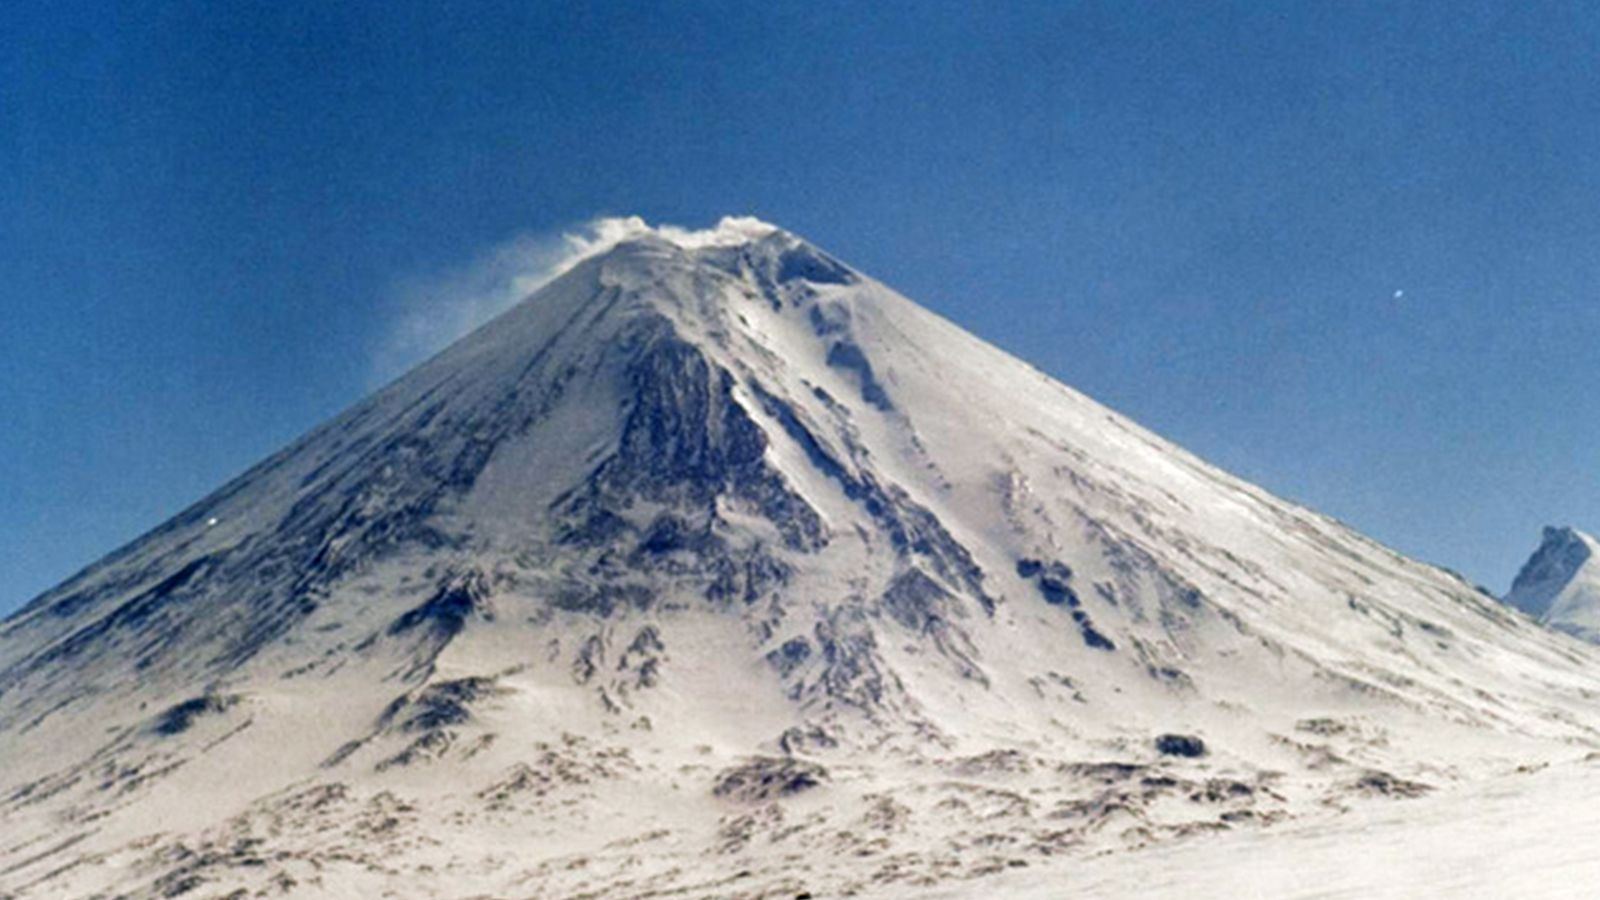 Извержение вулкана Ключевской сопки началось на Камчатке 